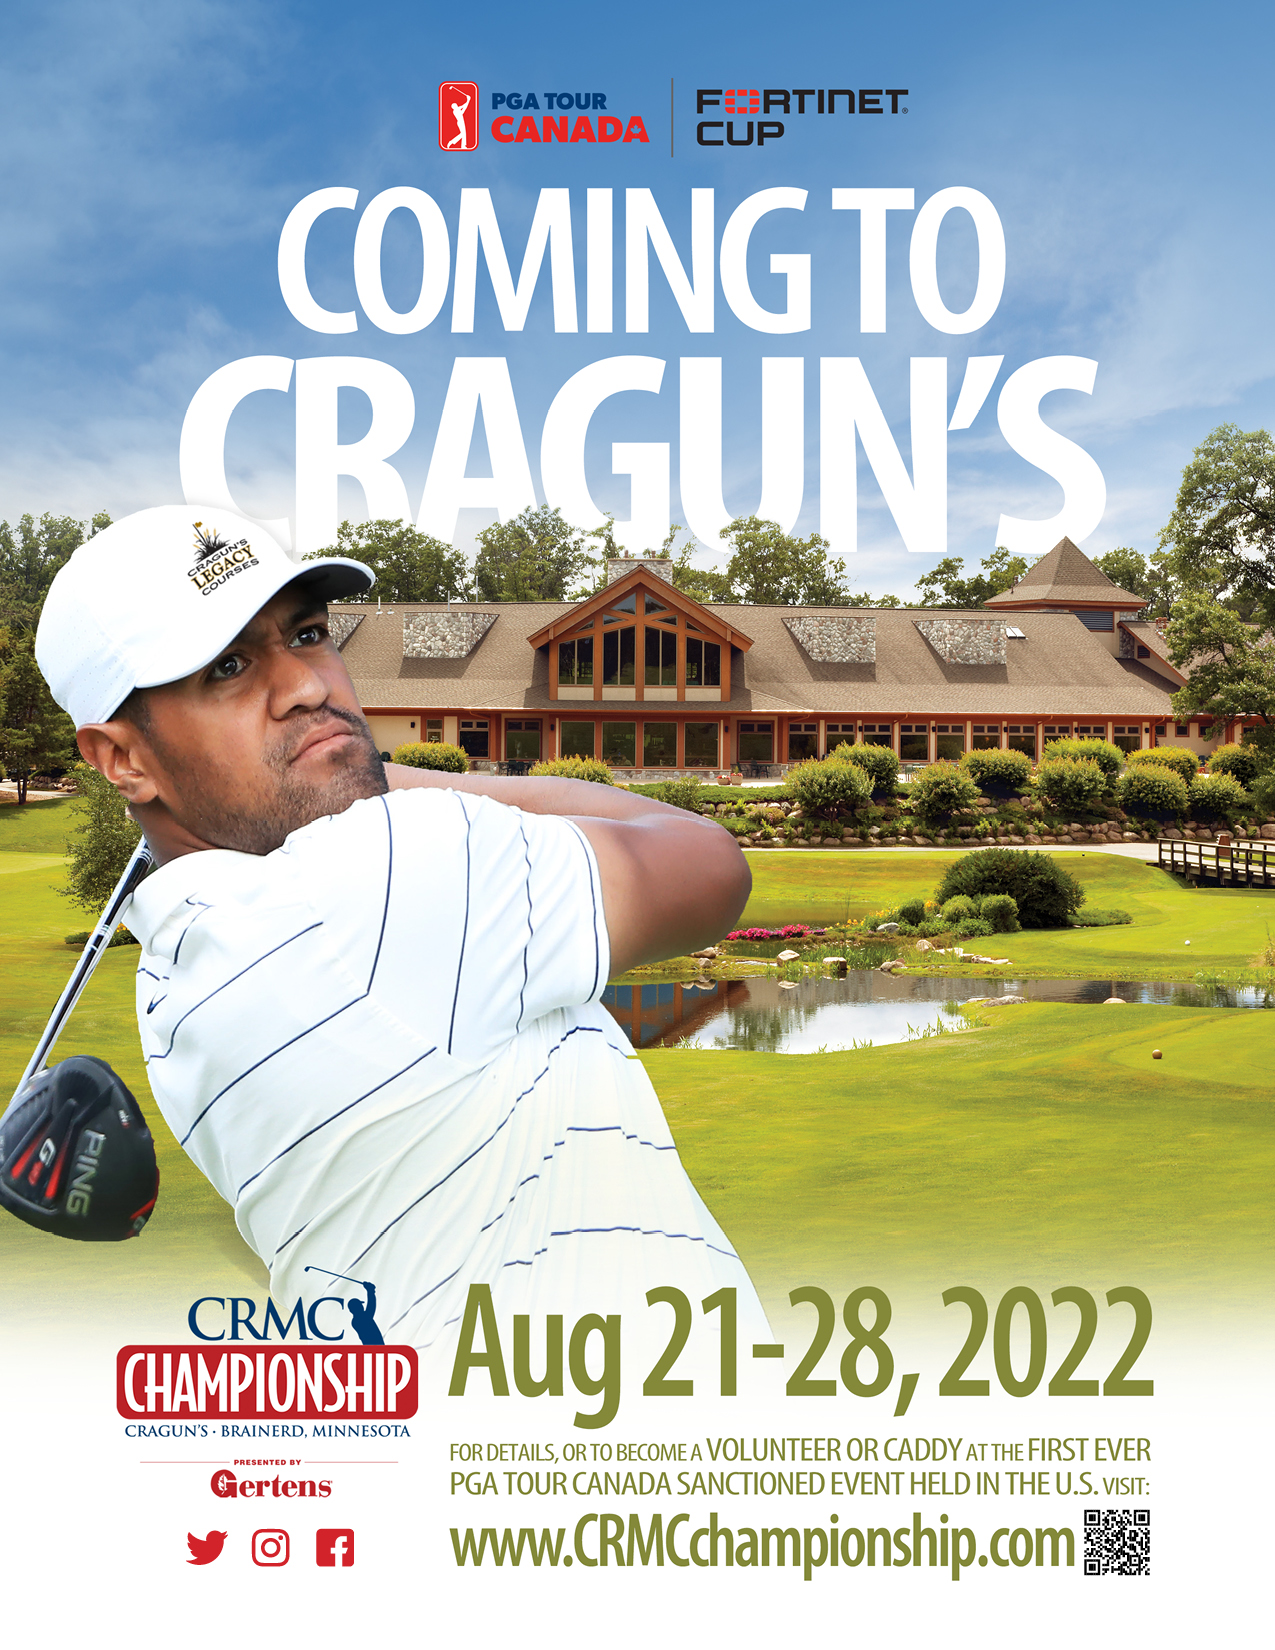 PGA Tour CRMC Championship